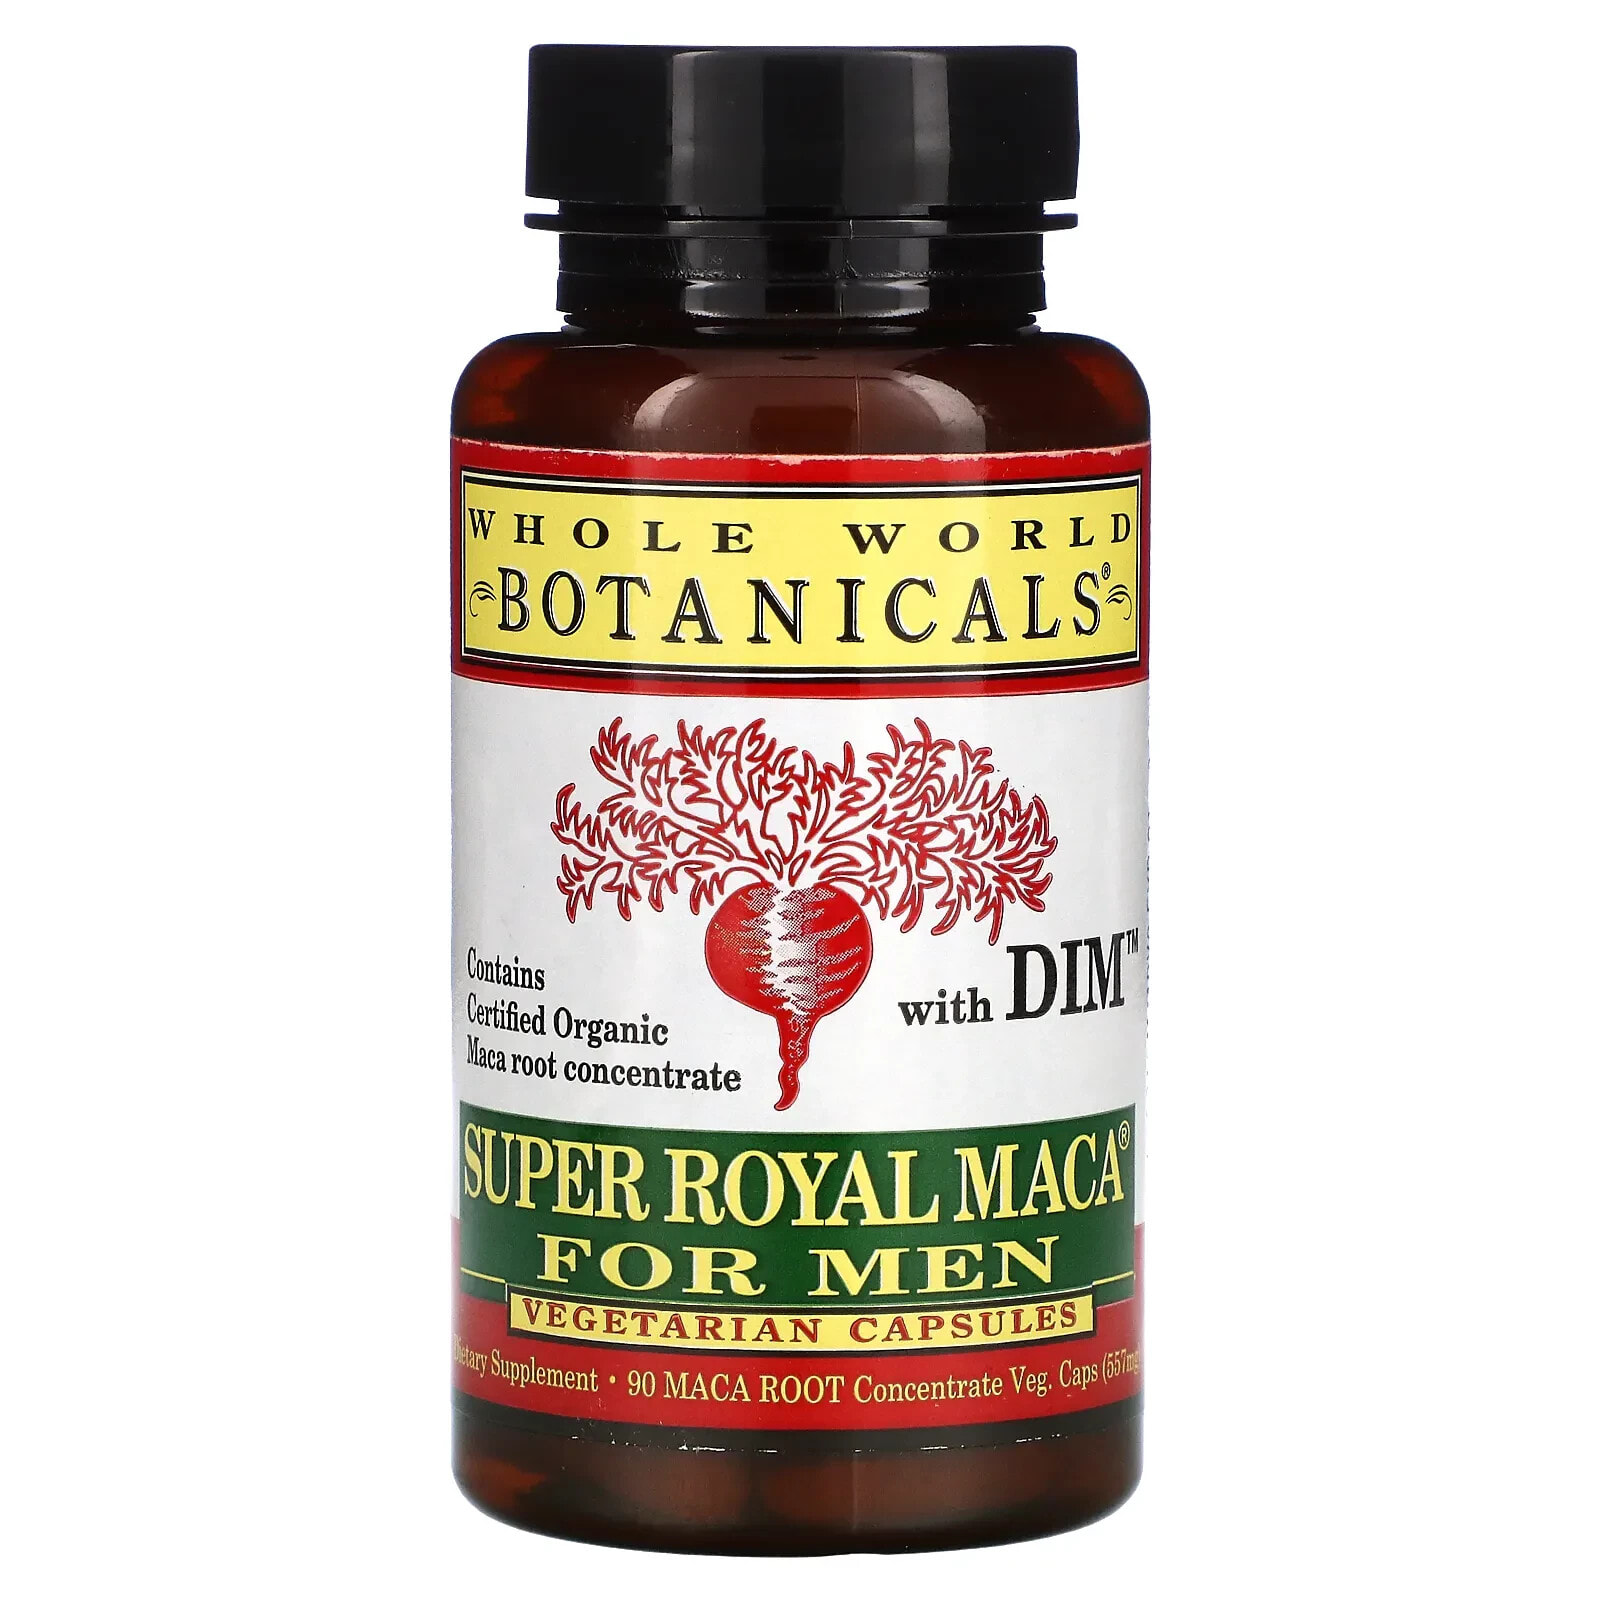 Вхоле Ворлд Ботаникалс, Super Royal Maca® For Men, препарат из маки для мужчин, 500 мг, 90 вегетарианских капсул